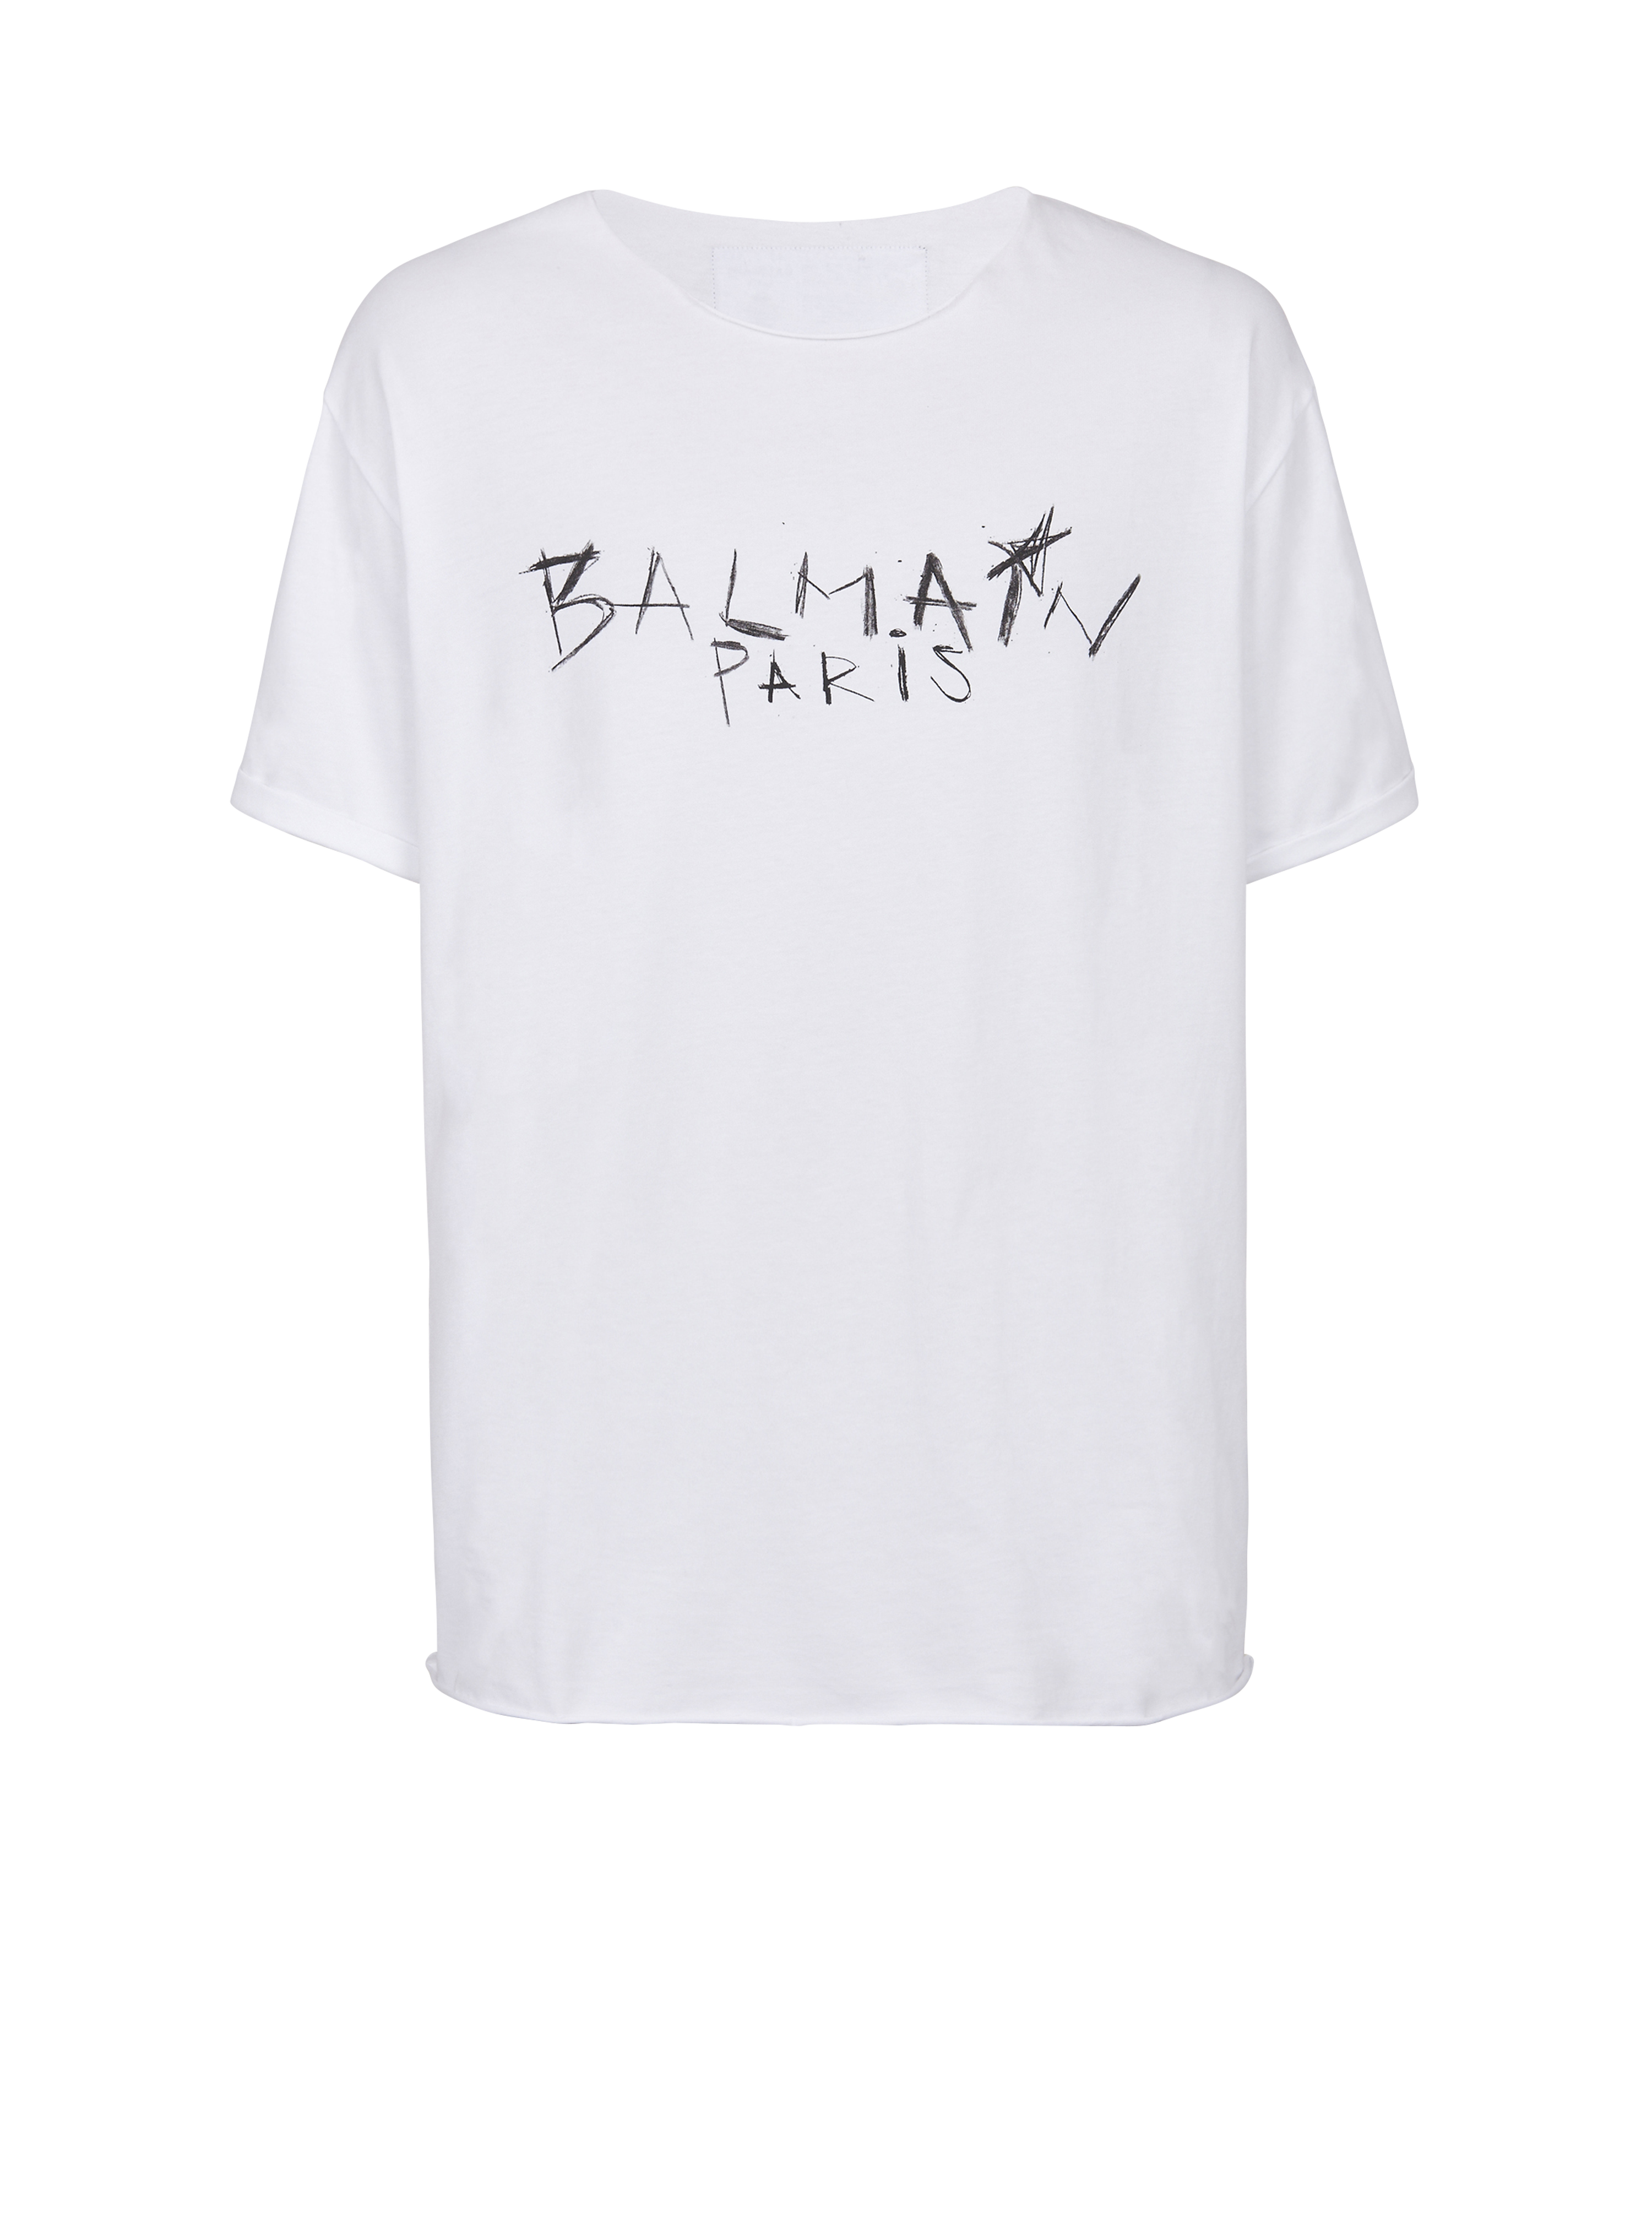 コットン Tシャツ Balmain Parisグラフィティロゴプリント, 白